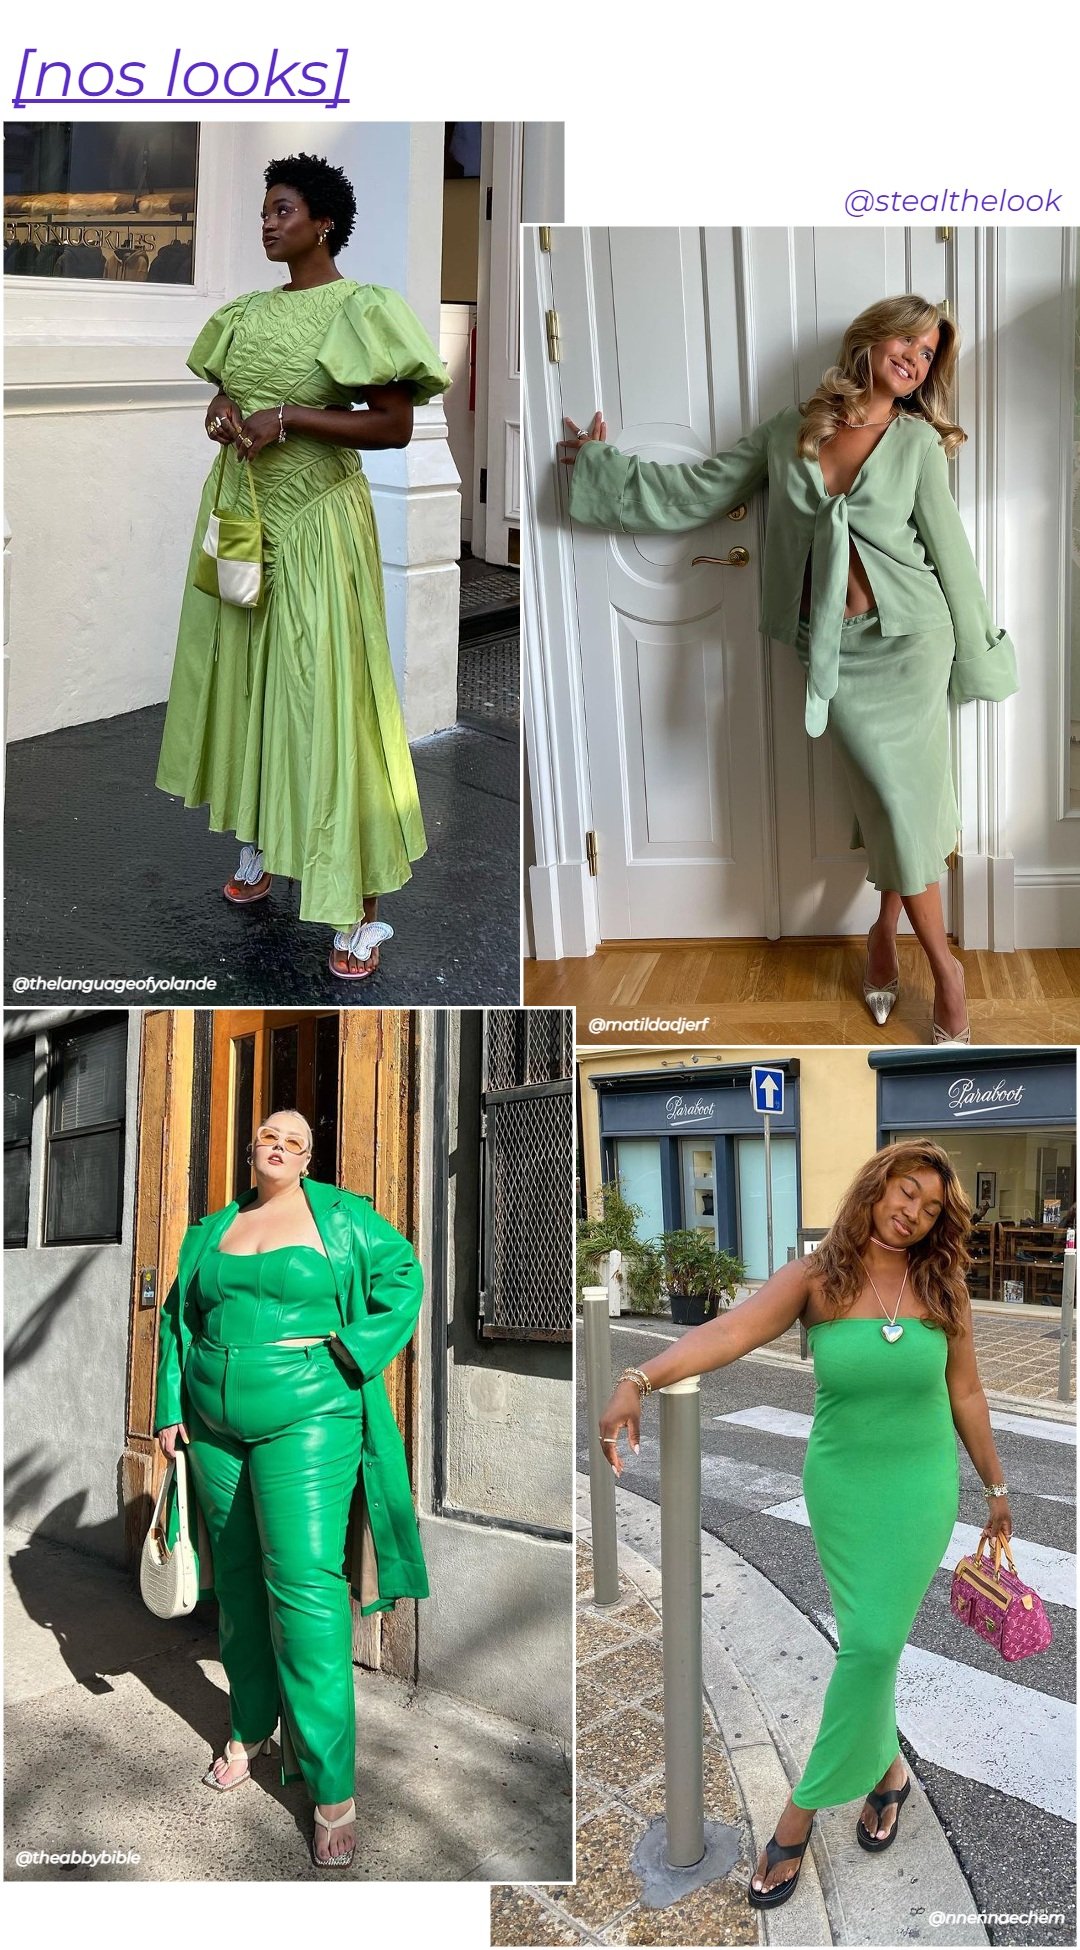 Nnena Echem, Abby Bible, Matilda Djfer e Yolande Macon - diferentes looks com verde - cor tendência - verão - colagem com 4 mulheres diferentes usando roupas variadas em tons de verde - https://stealthelook.com.br